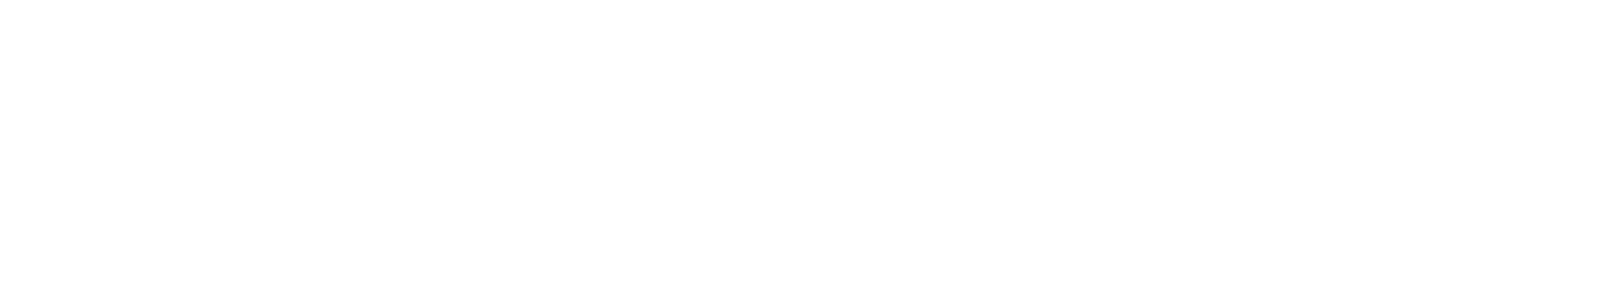 Dynatrace logo large for dark backgrounds (transparent PNG)